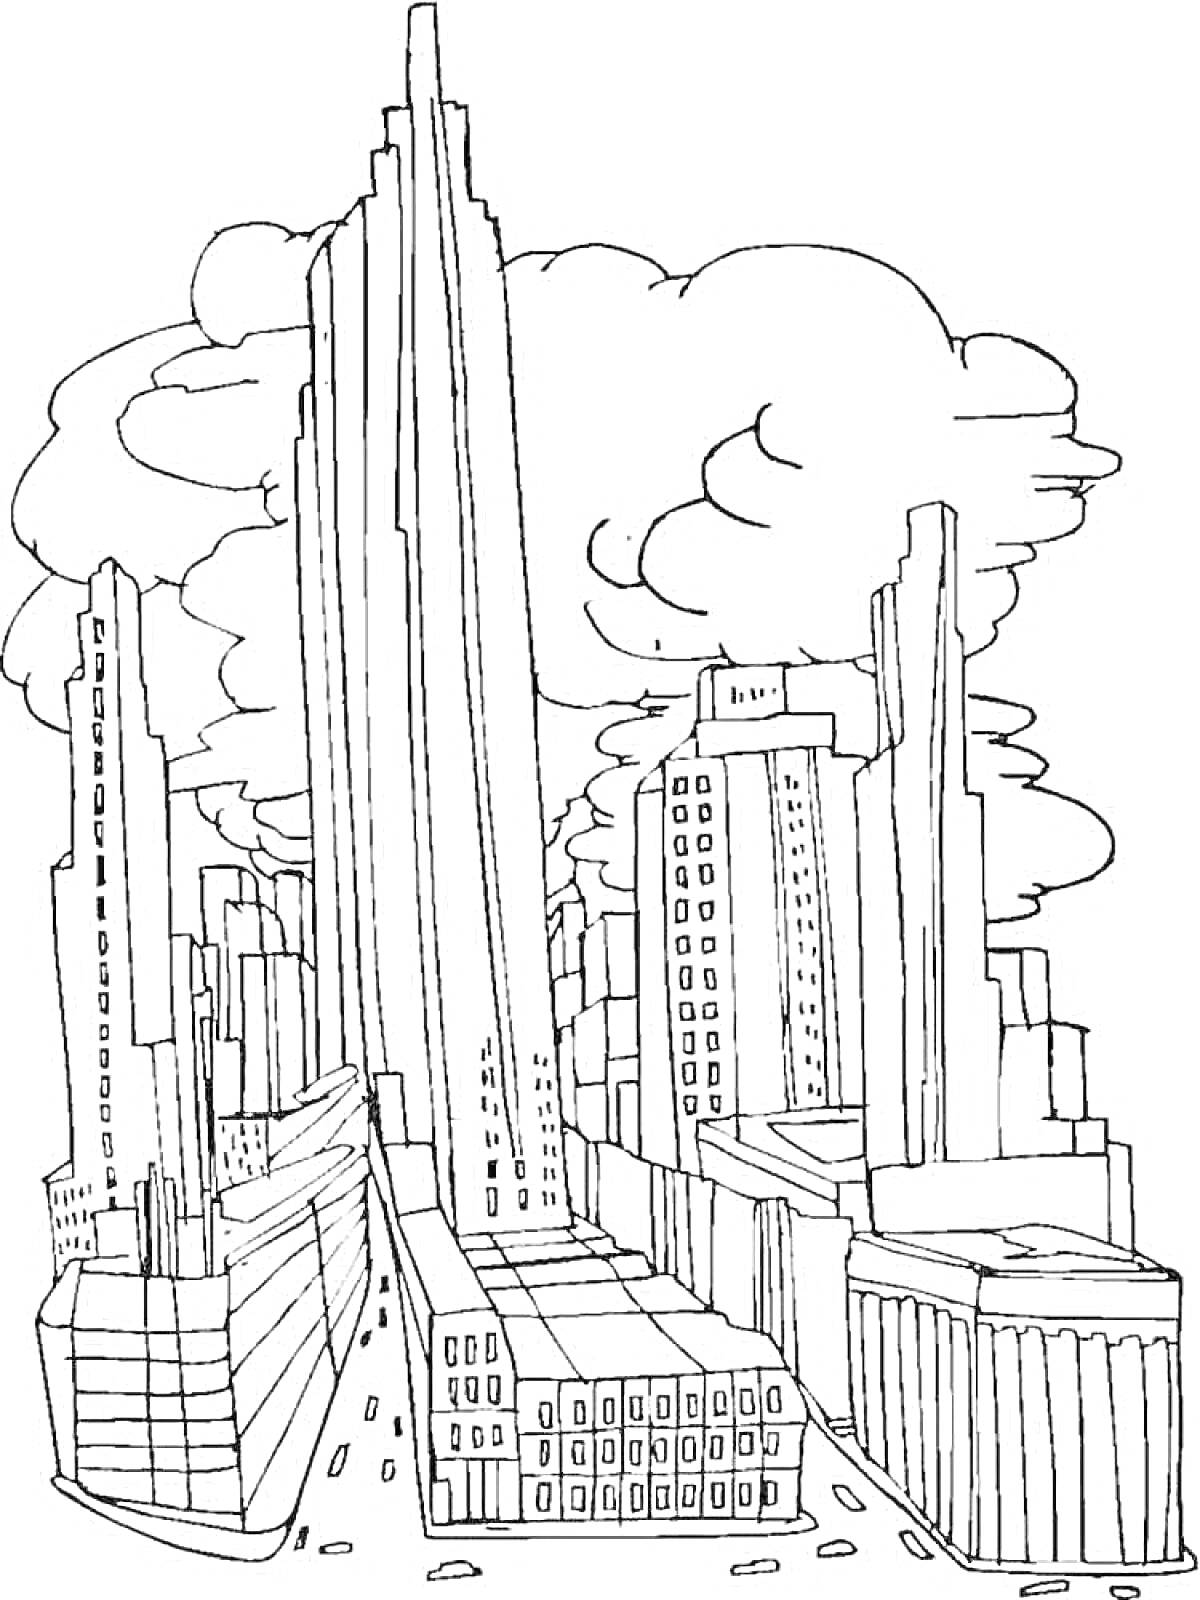 Город будущего с высотными небоскребами и дорогой среди зданий